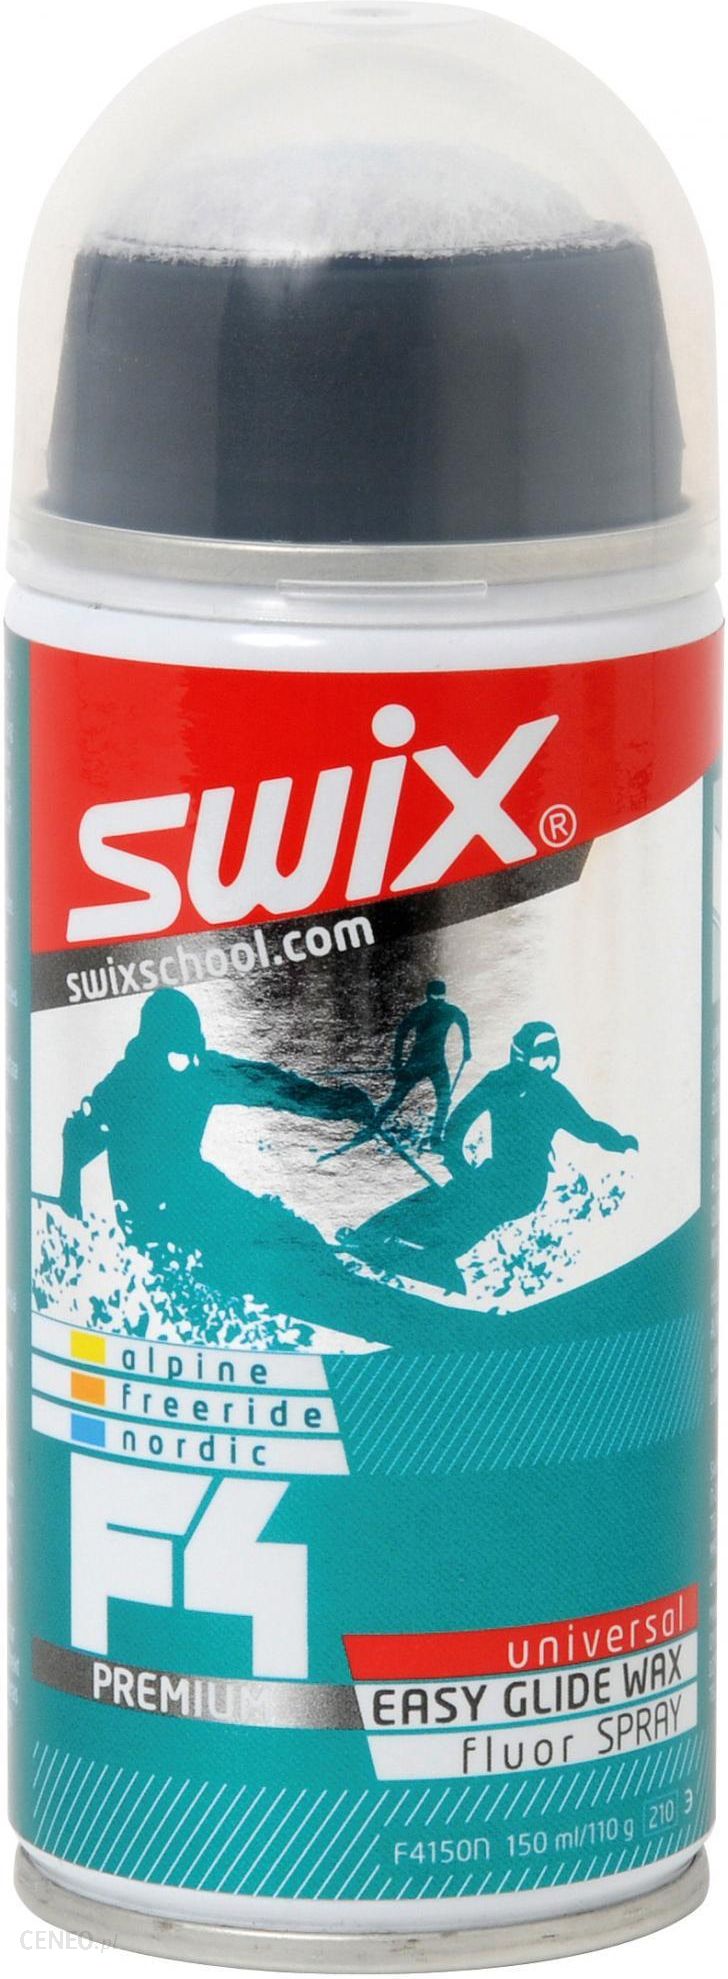 Swix f4. Мазь скольжения Swix f4 Universal. Парафин Swix f4 Premium. Swix f4 Universal парафин. Мазь скольжения Swix Glide.